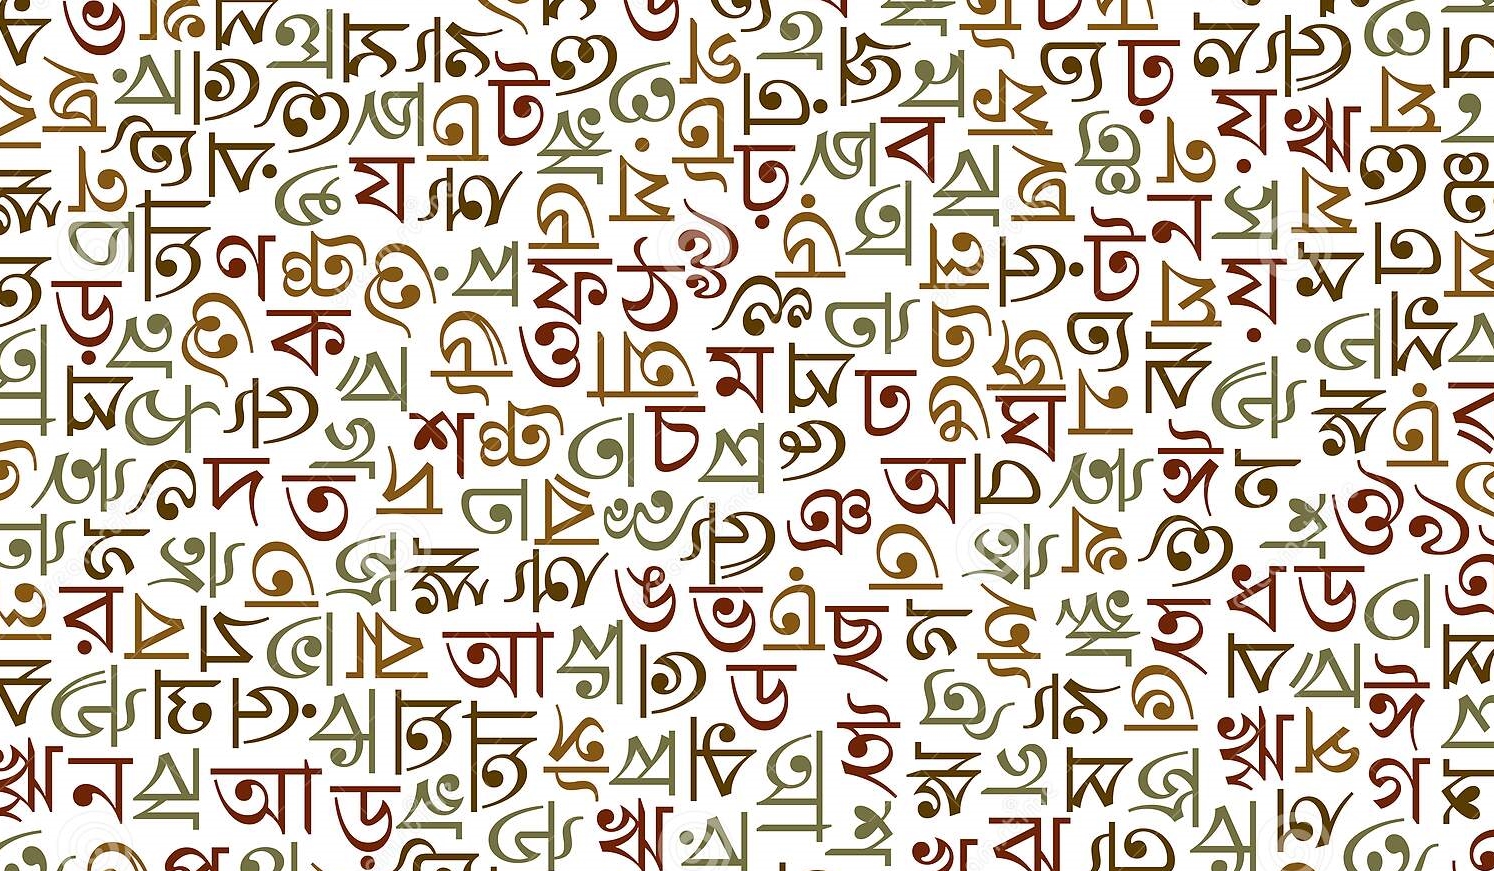 Bengali language script